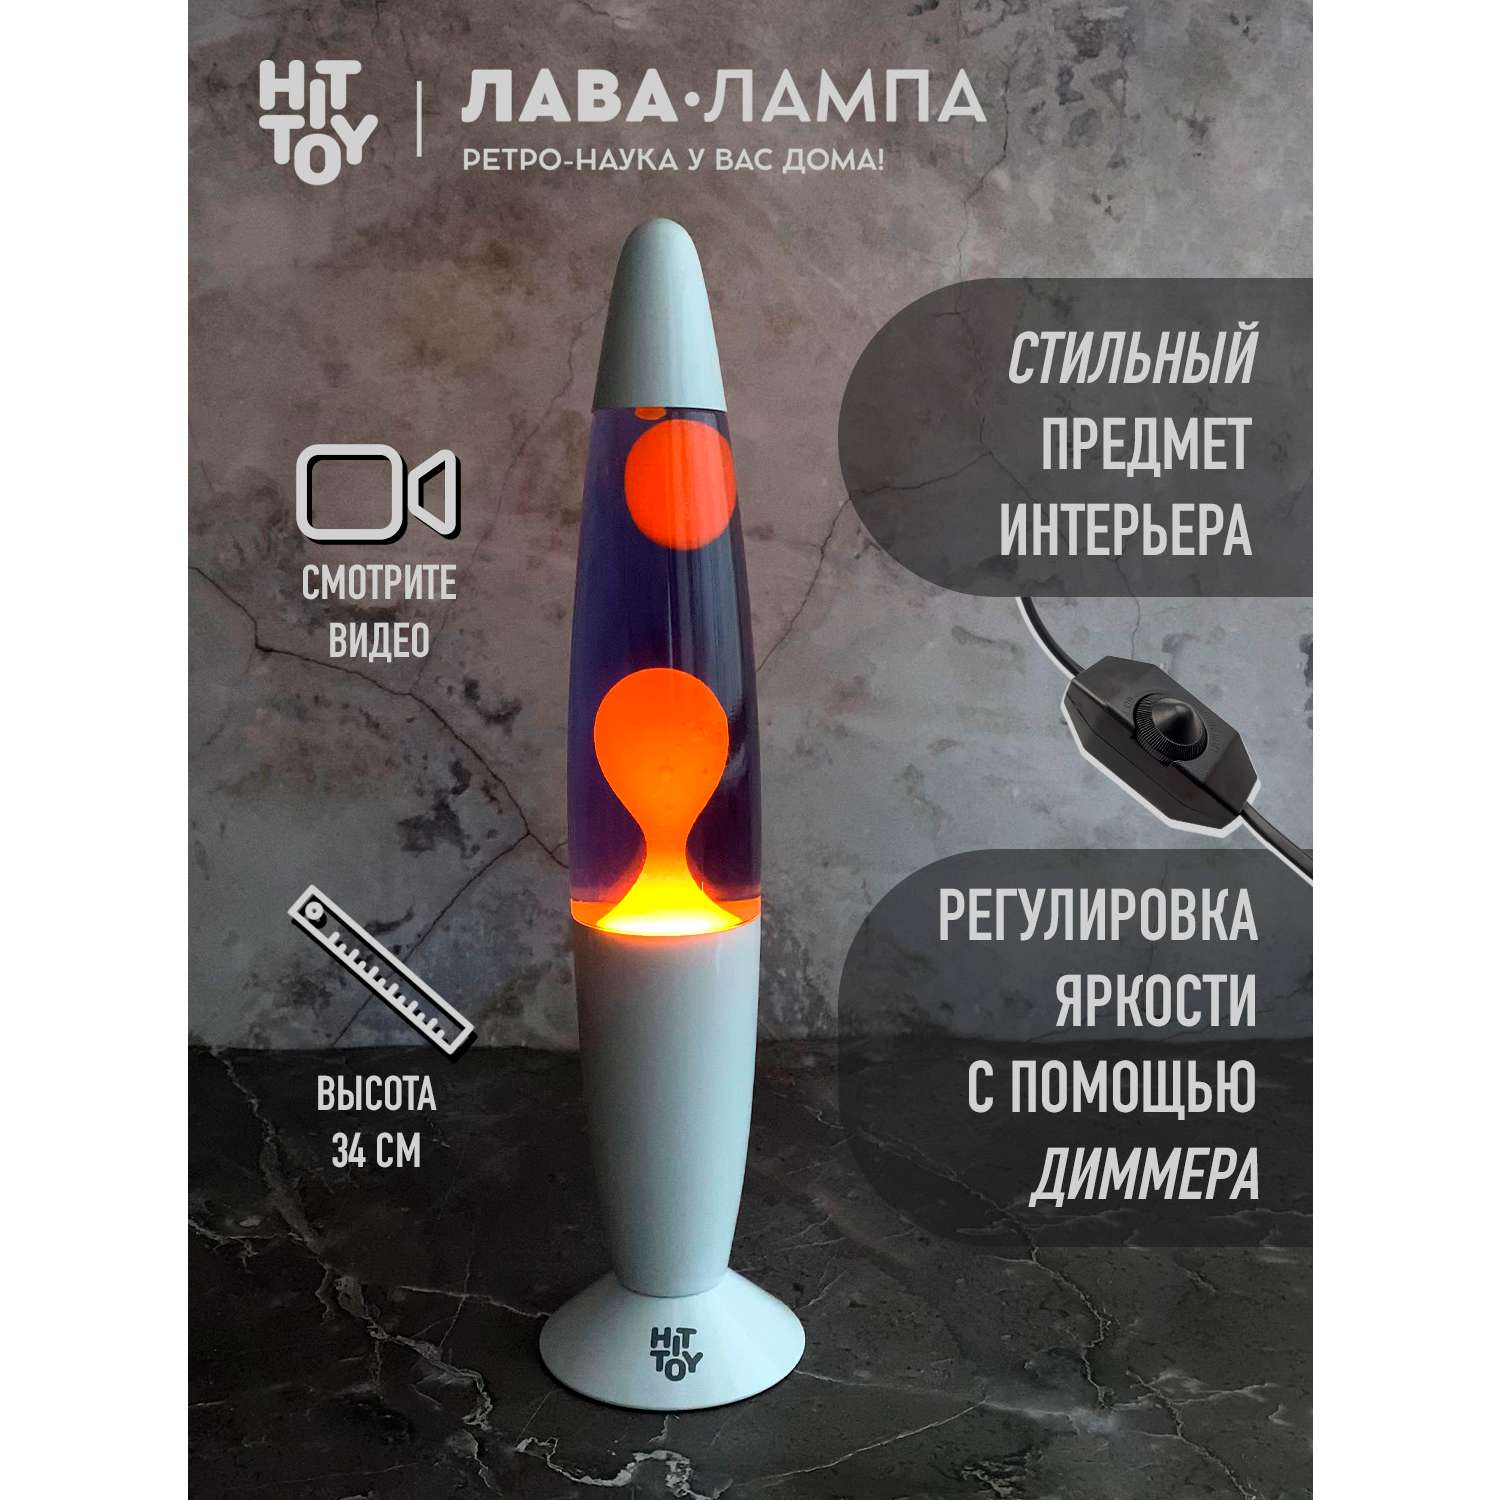 Светильник HitToy Лава-лампа белый корпус 34 см Фиолетовый/Оранжевый - фото 4